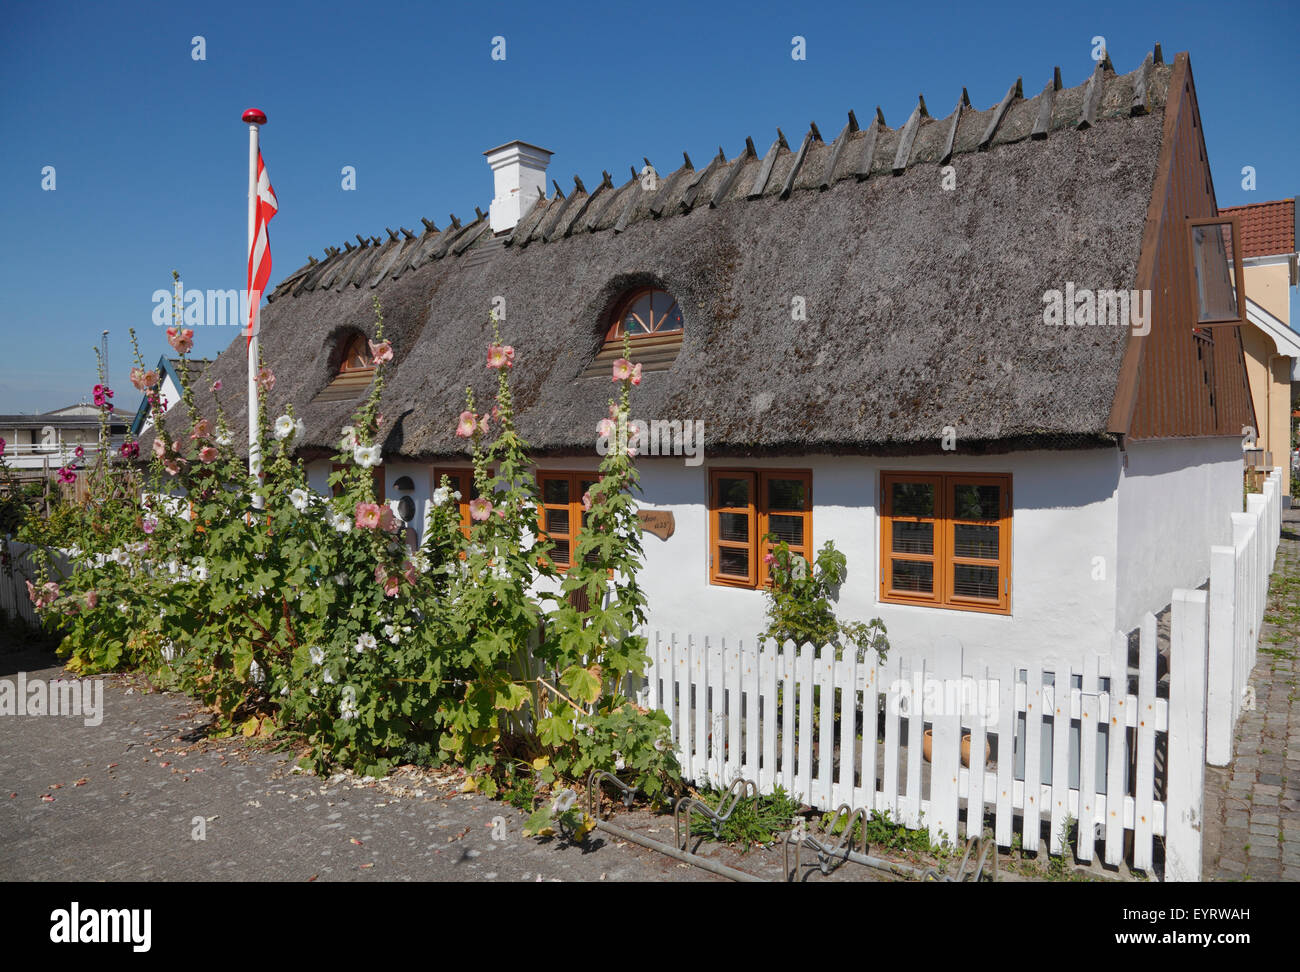 Charmante maison ancienne avec un toit de chaume et dans le jardin de roses trémières sur Nørregade la rue principale de la petite ville de Hundested, Sealand, Danemark Banque D'Images